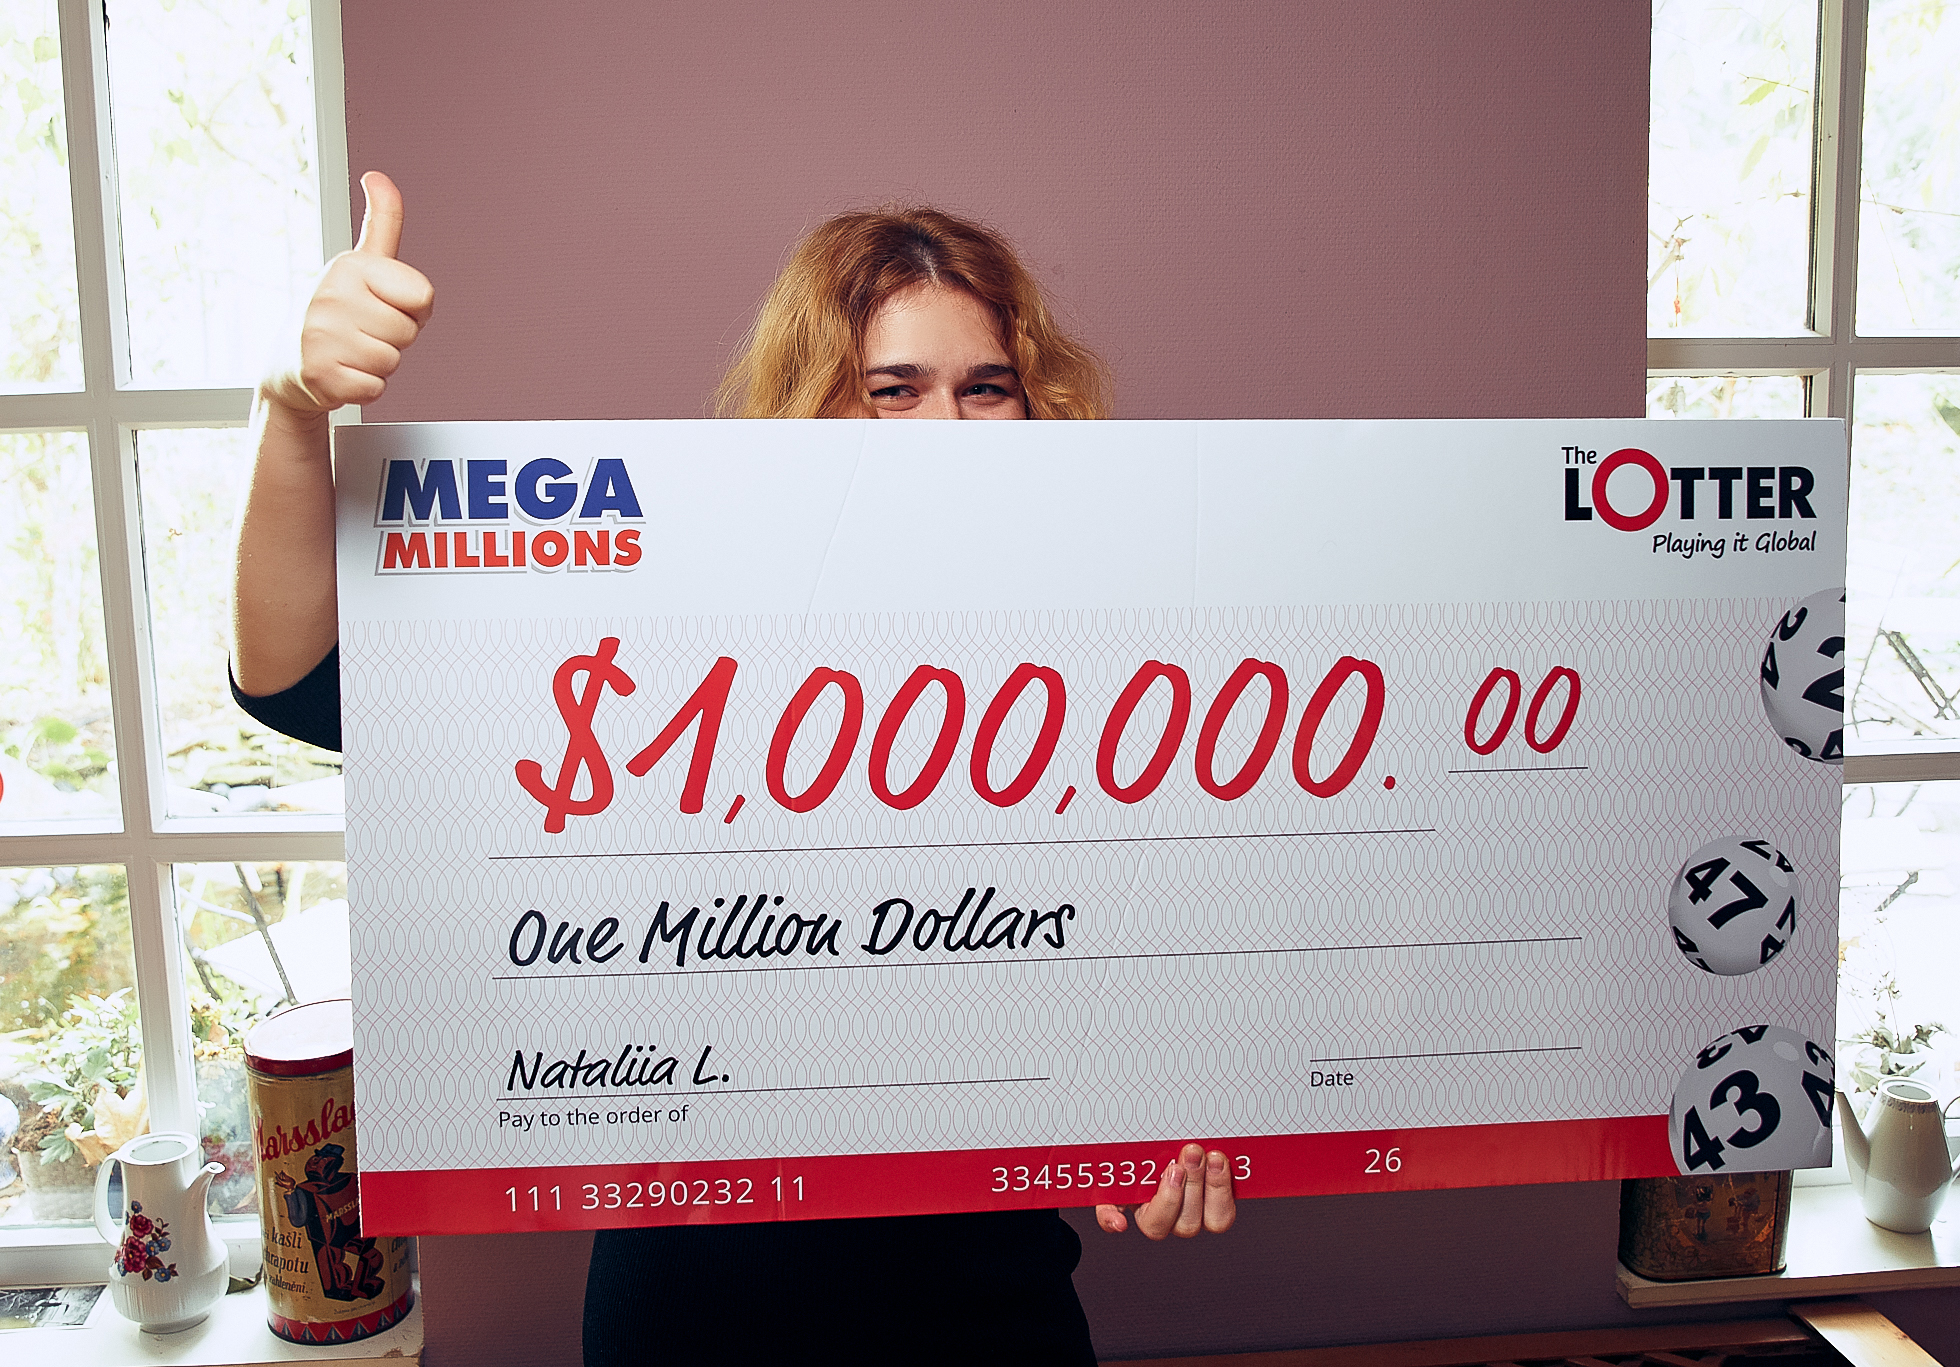 A Mega Millions é uma das maiores loterias ao redor do mundo, mas foi em 2018, quando sorteou um jackpot recorde de 1,53 bilhão de dólares, que sua popularidade cresceu a níveis inéditos